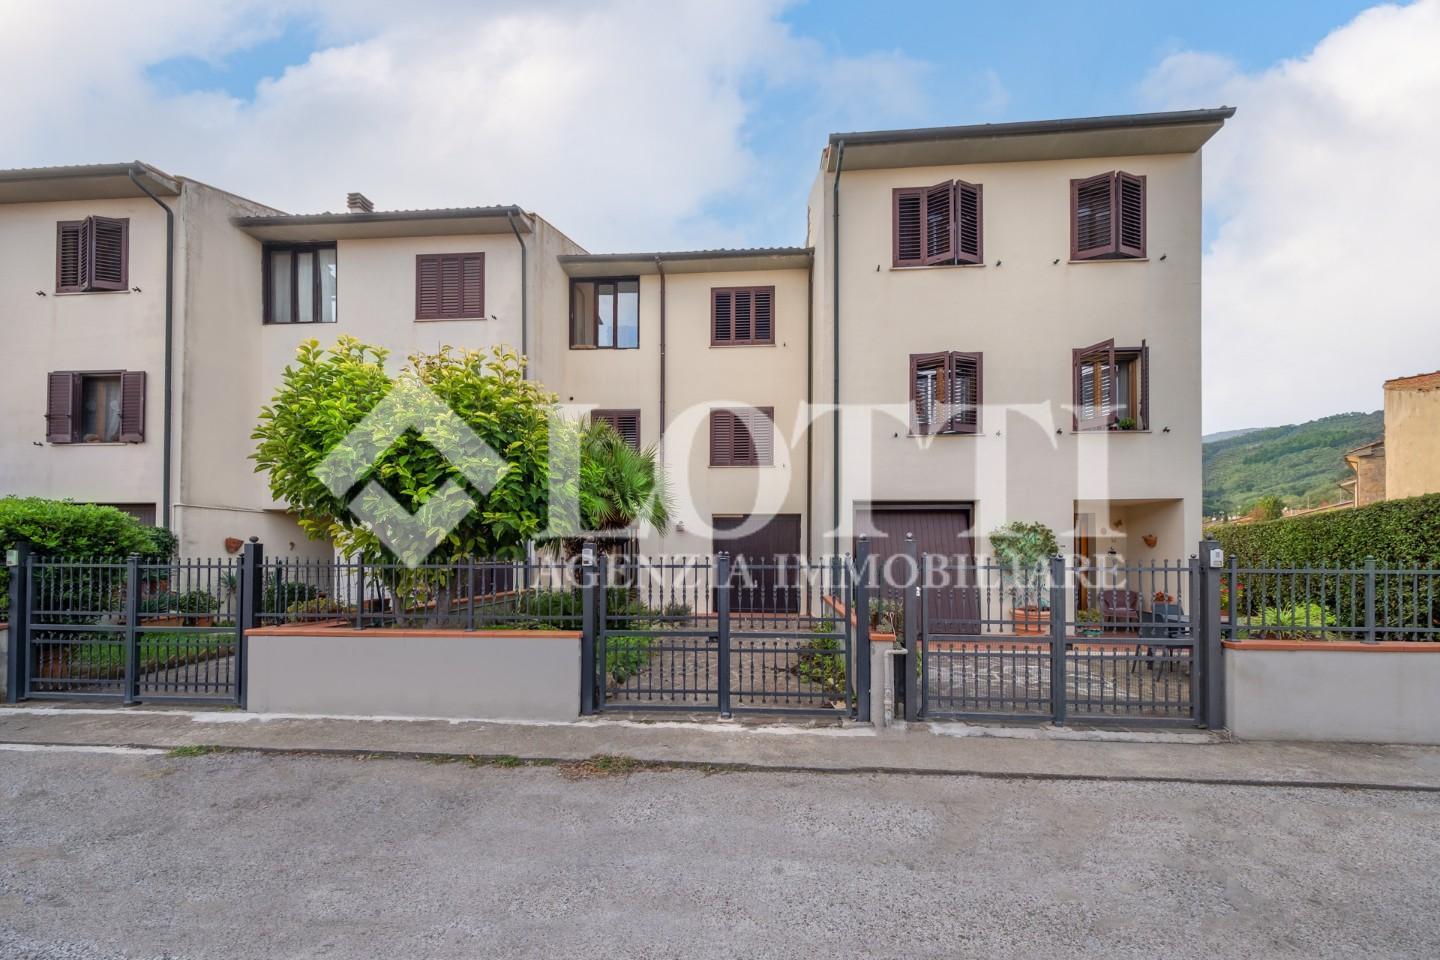 Terraced house for sale in San Giovanni Alla Vena, Vicopisano (PI)